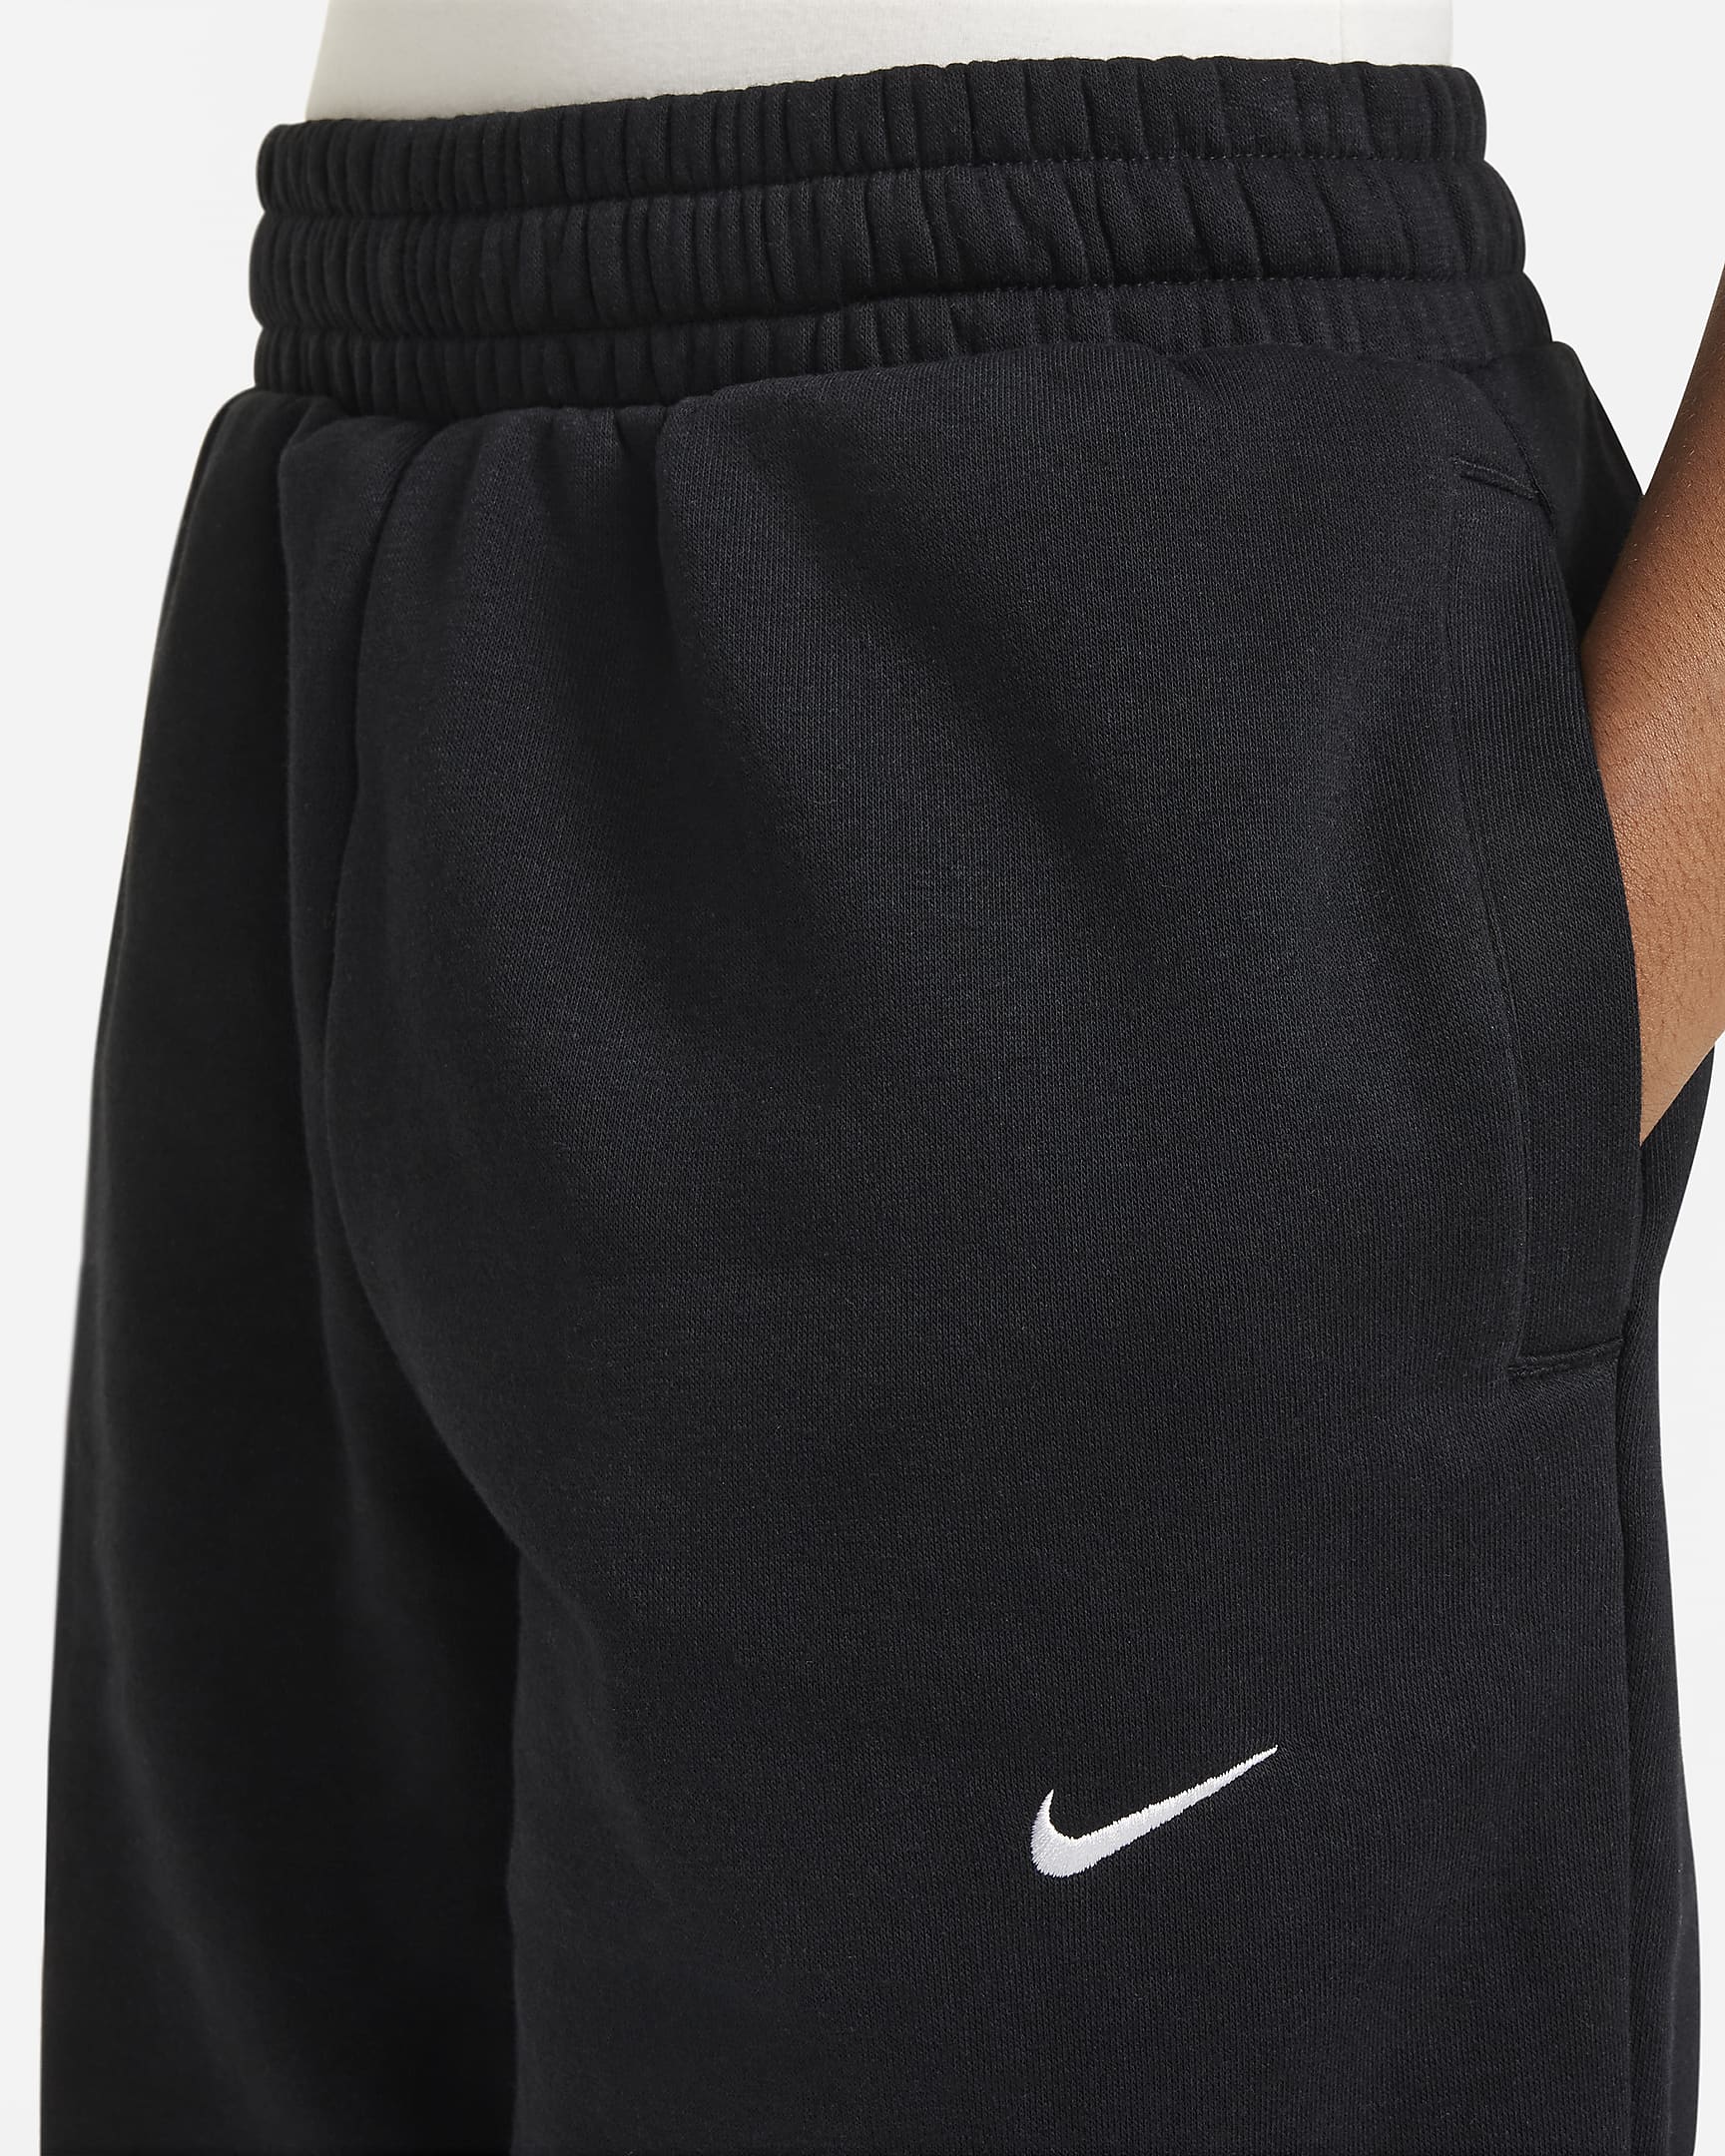 Nike Culture of Basketball polárnadrág nagyobb gyerekeknek - Fekete/Fehér